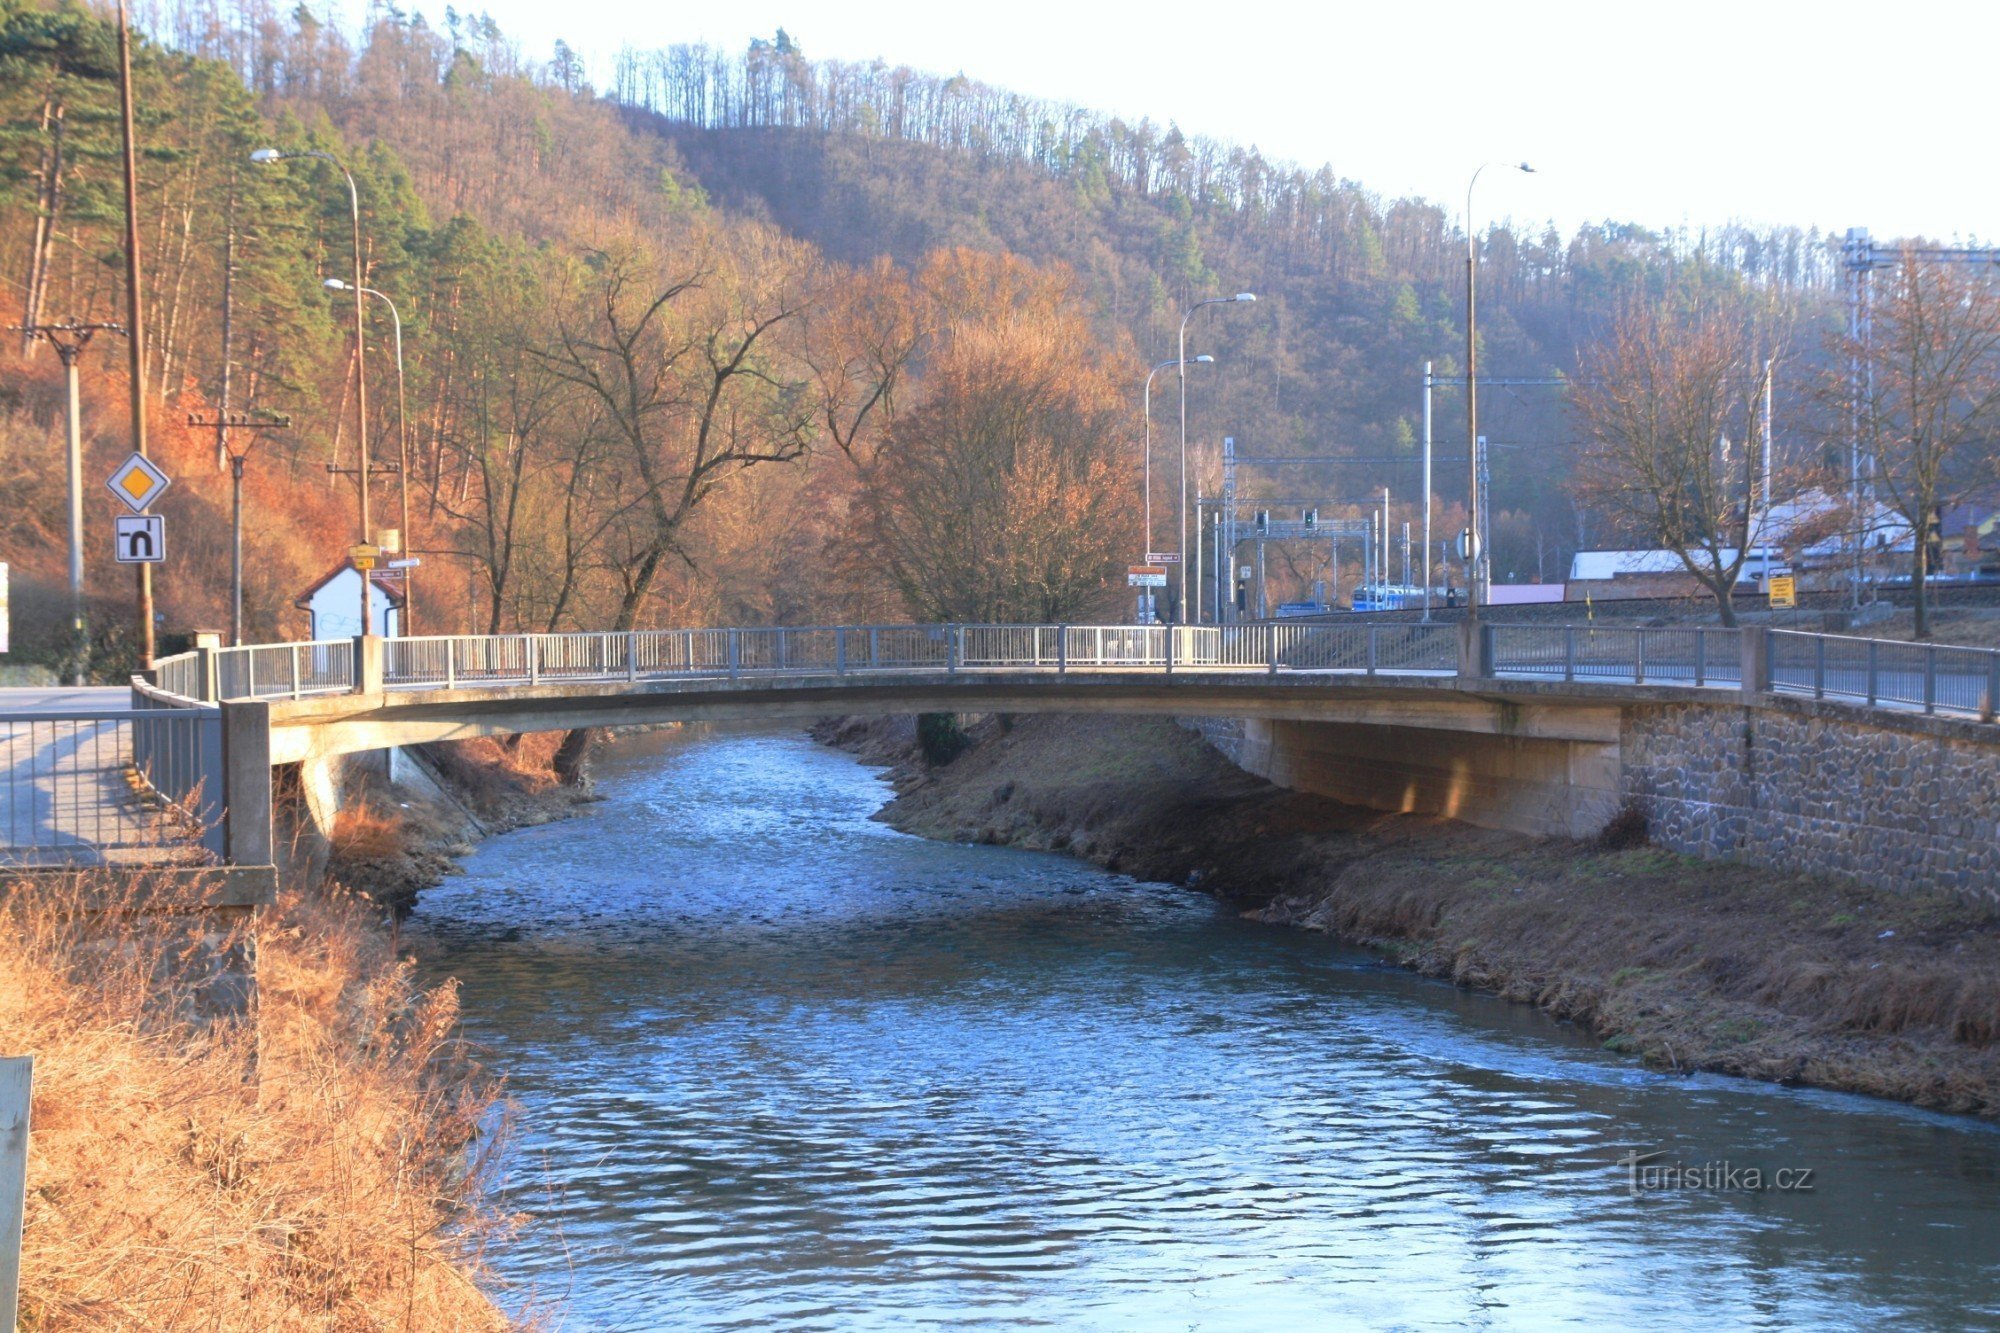 Мост через реку Свитаву возле Соколовны